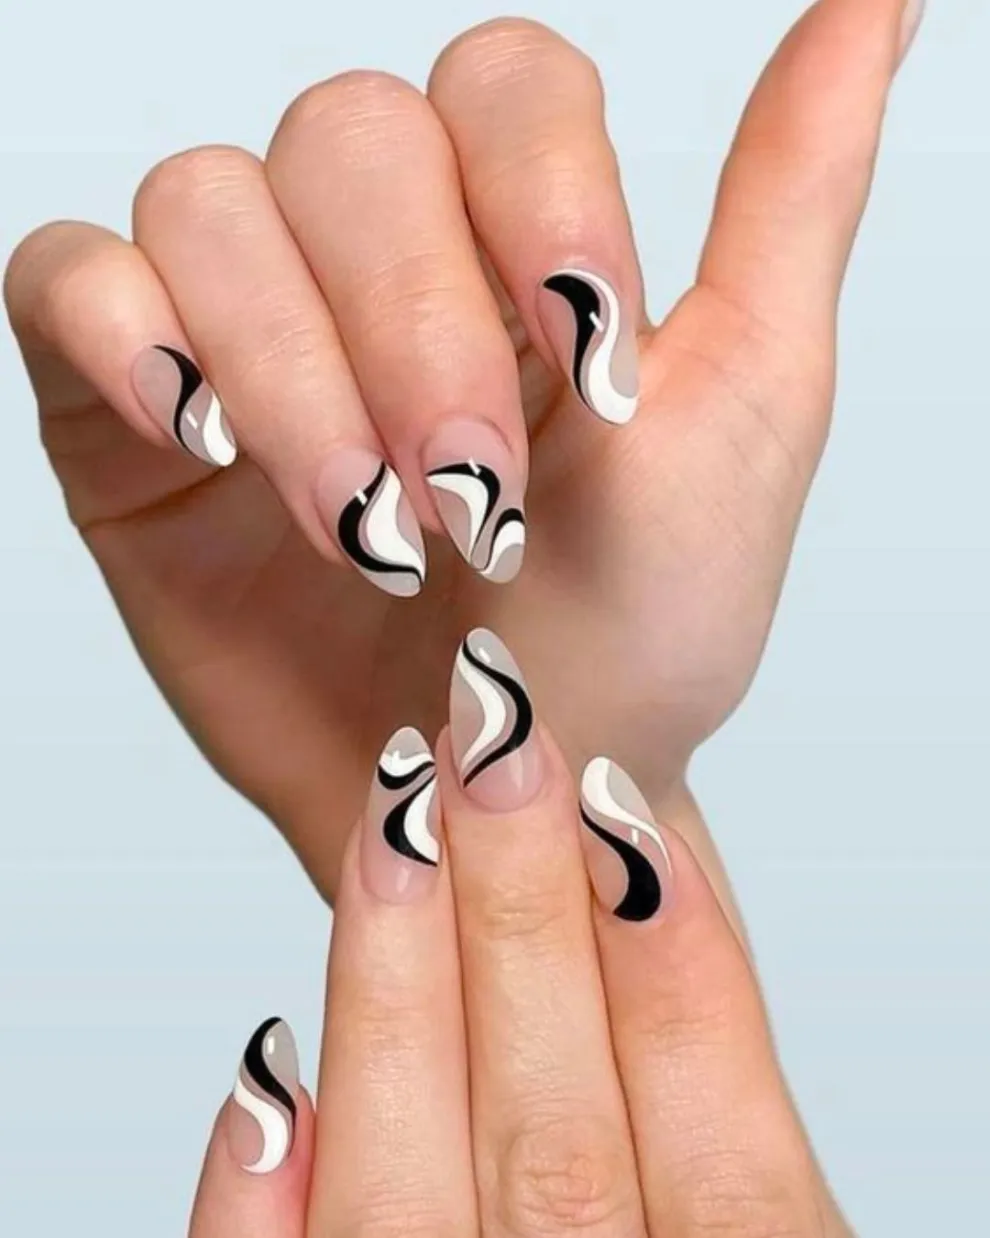 Sobre una base transparente, jugas con el curve nail art en blanco y negro.